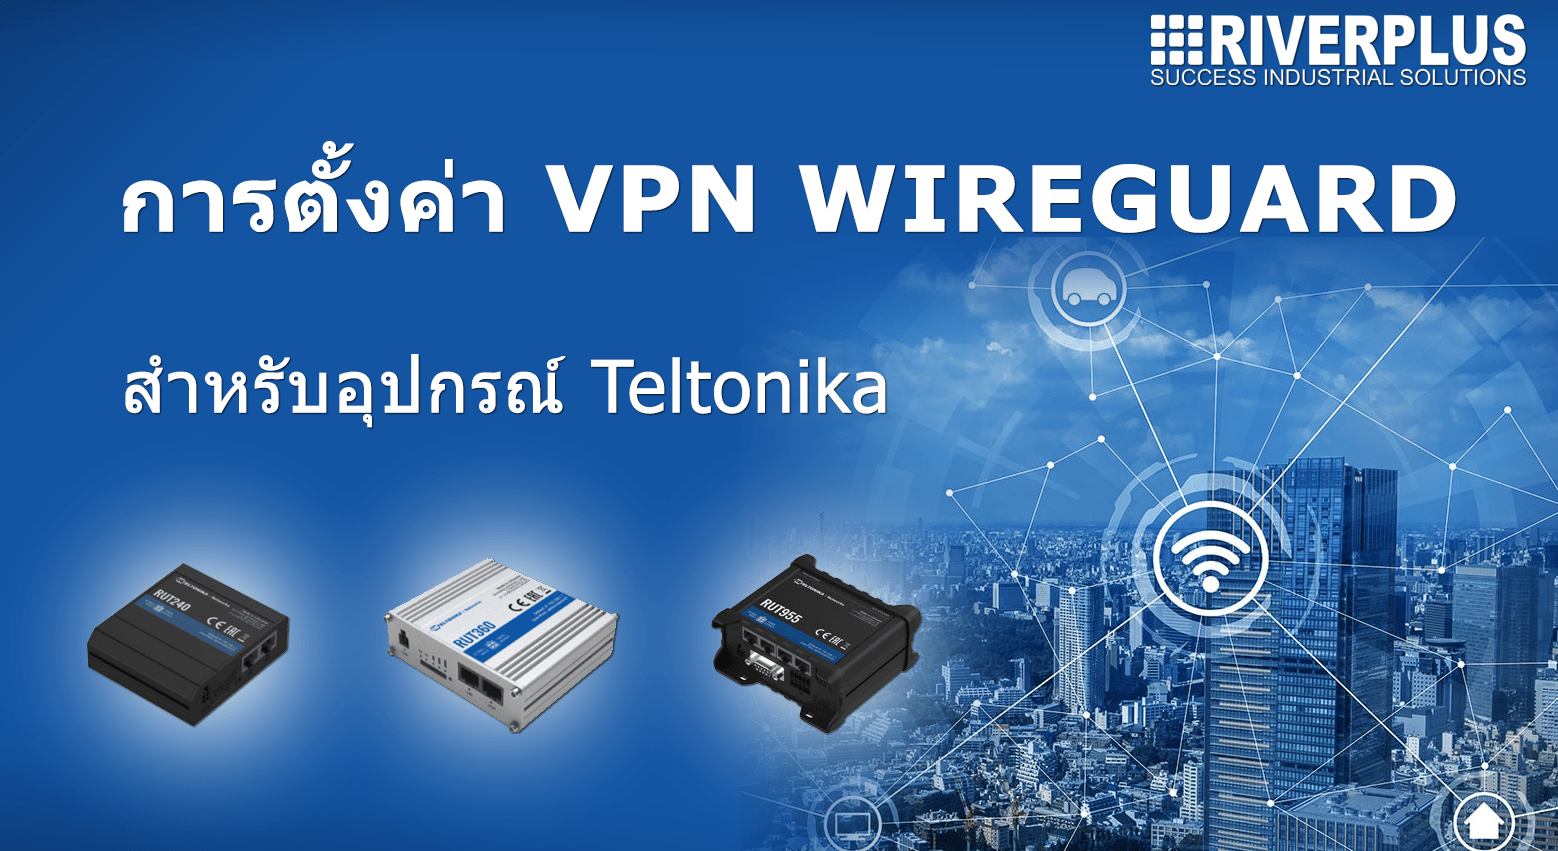 การตั้งค่า Wireguard VPN